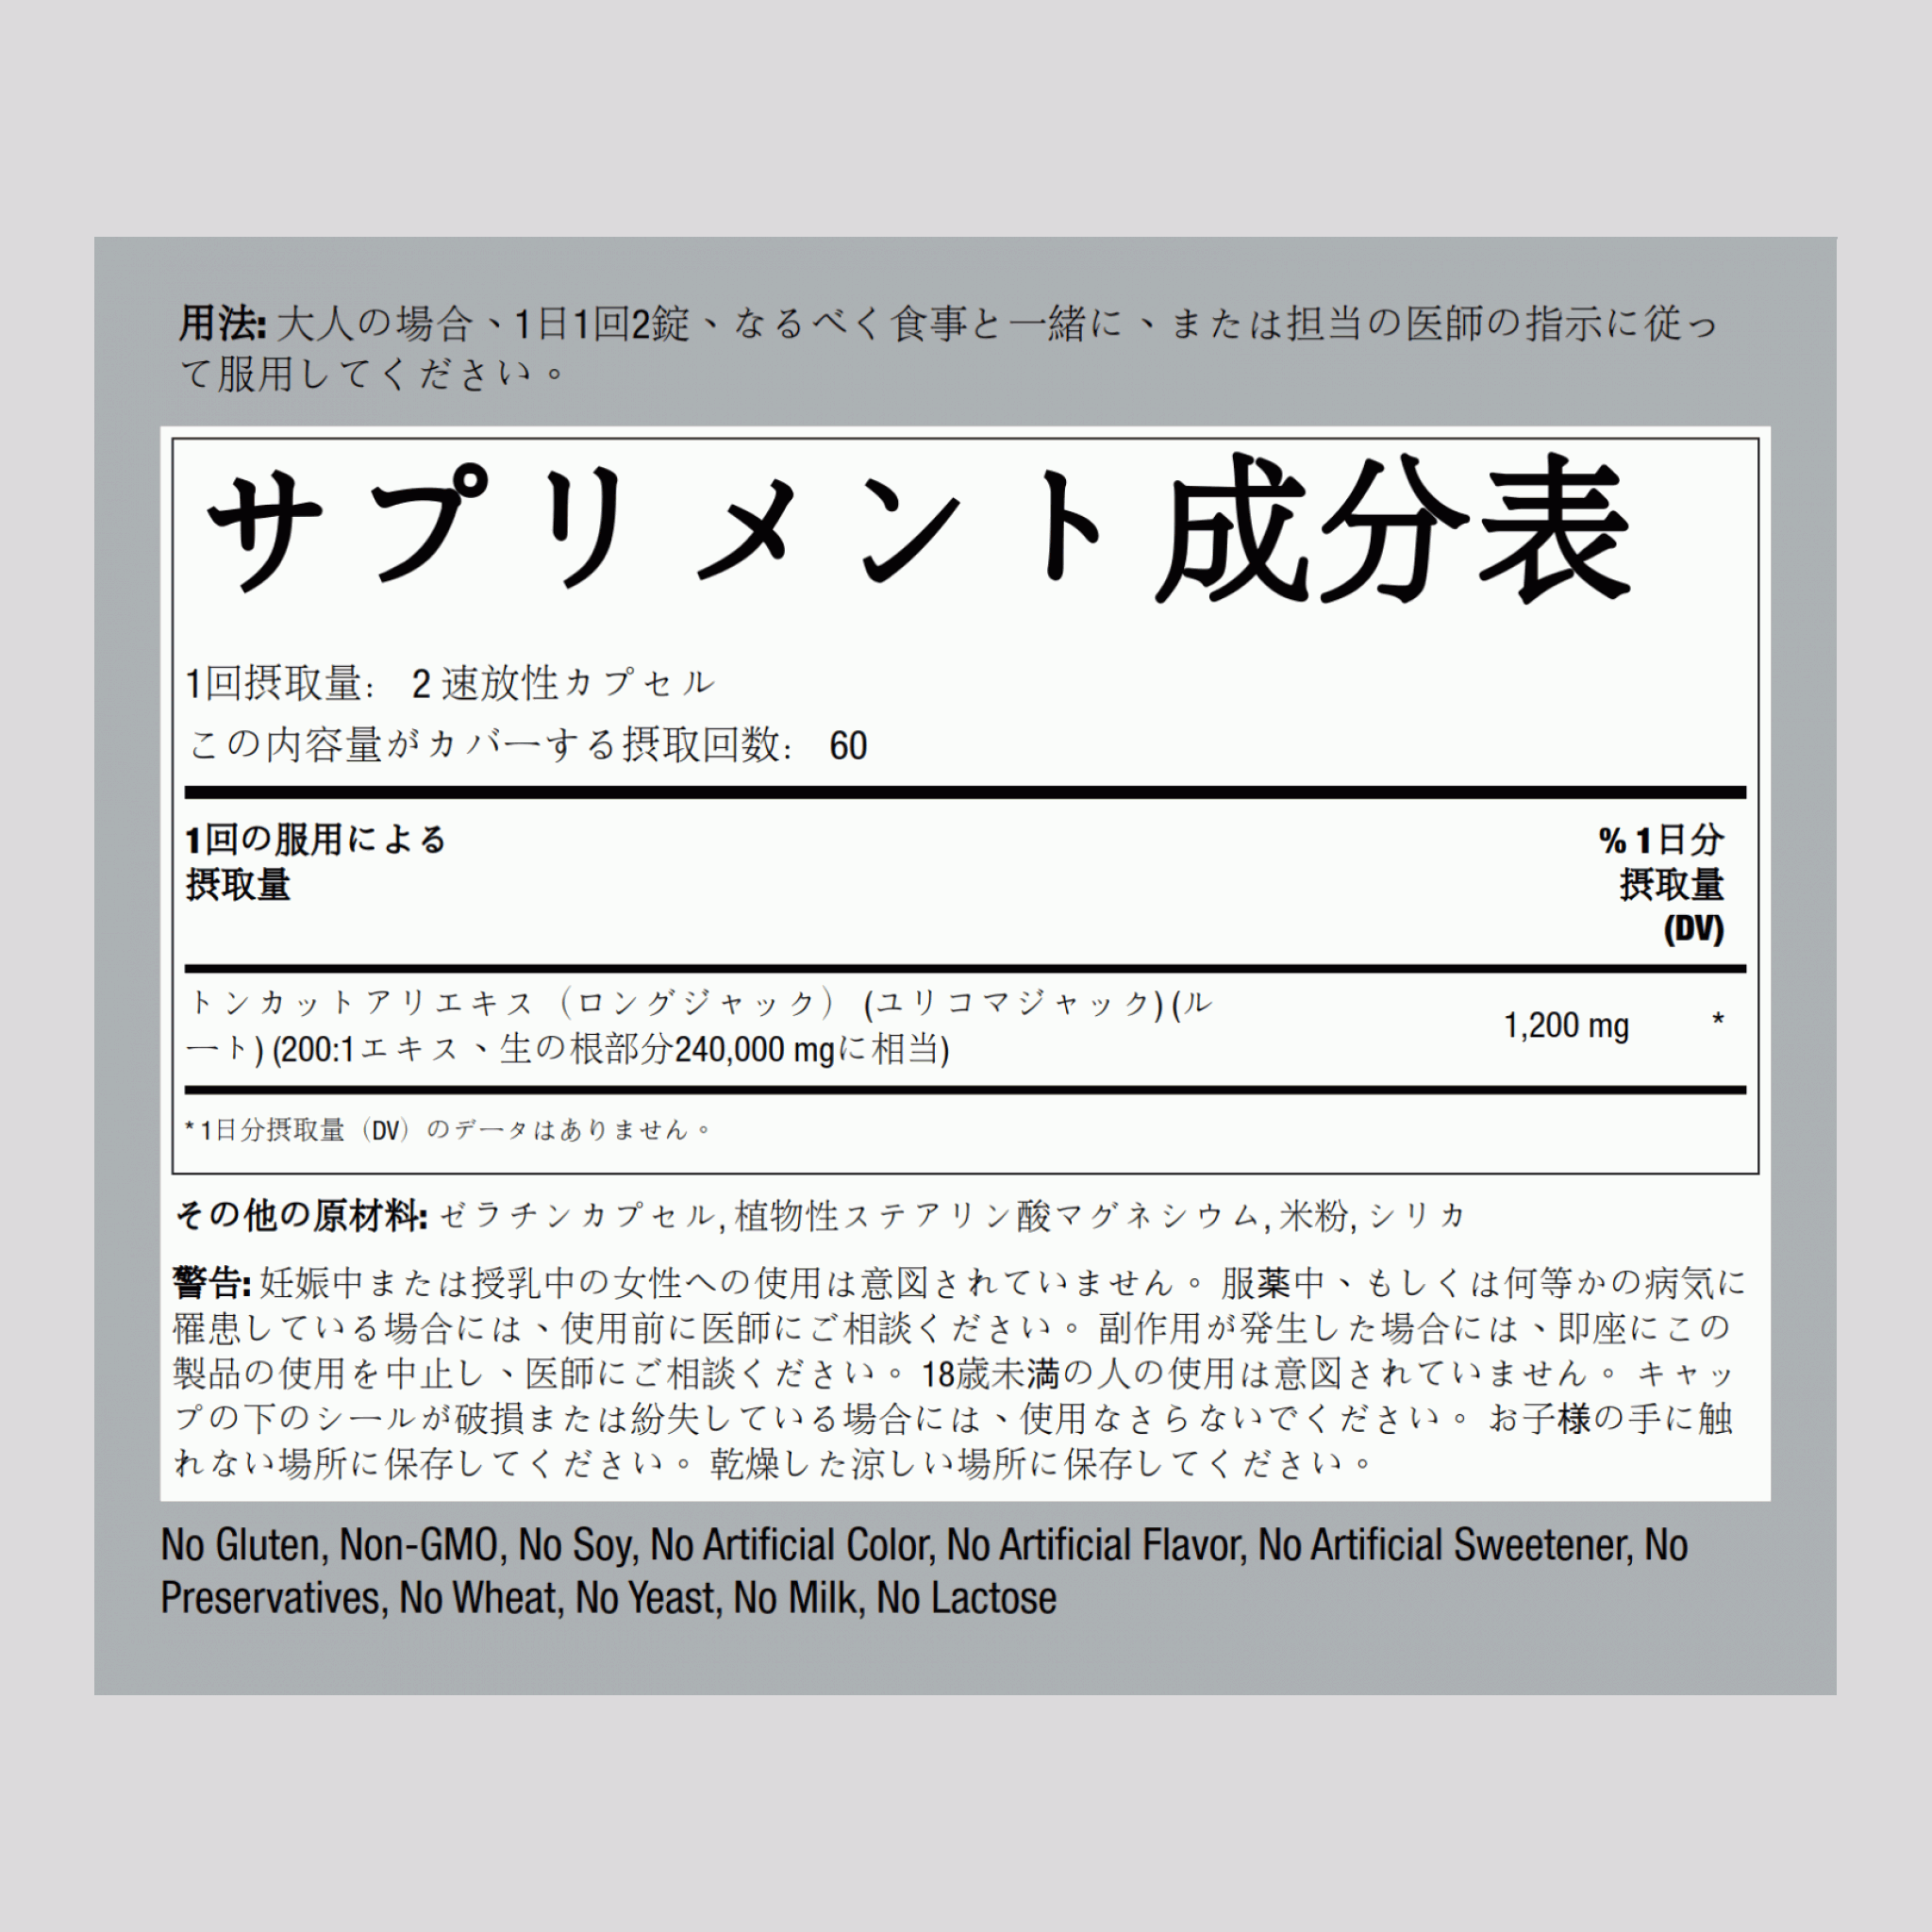 トンカット アリ (マレーシア人参) ロング ジャック 1200 mg (1 回分) 120 速放性カプセル     